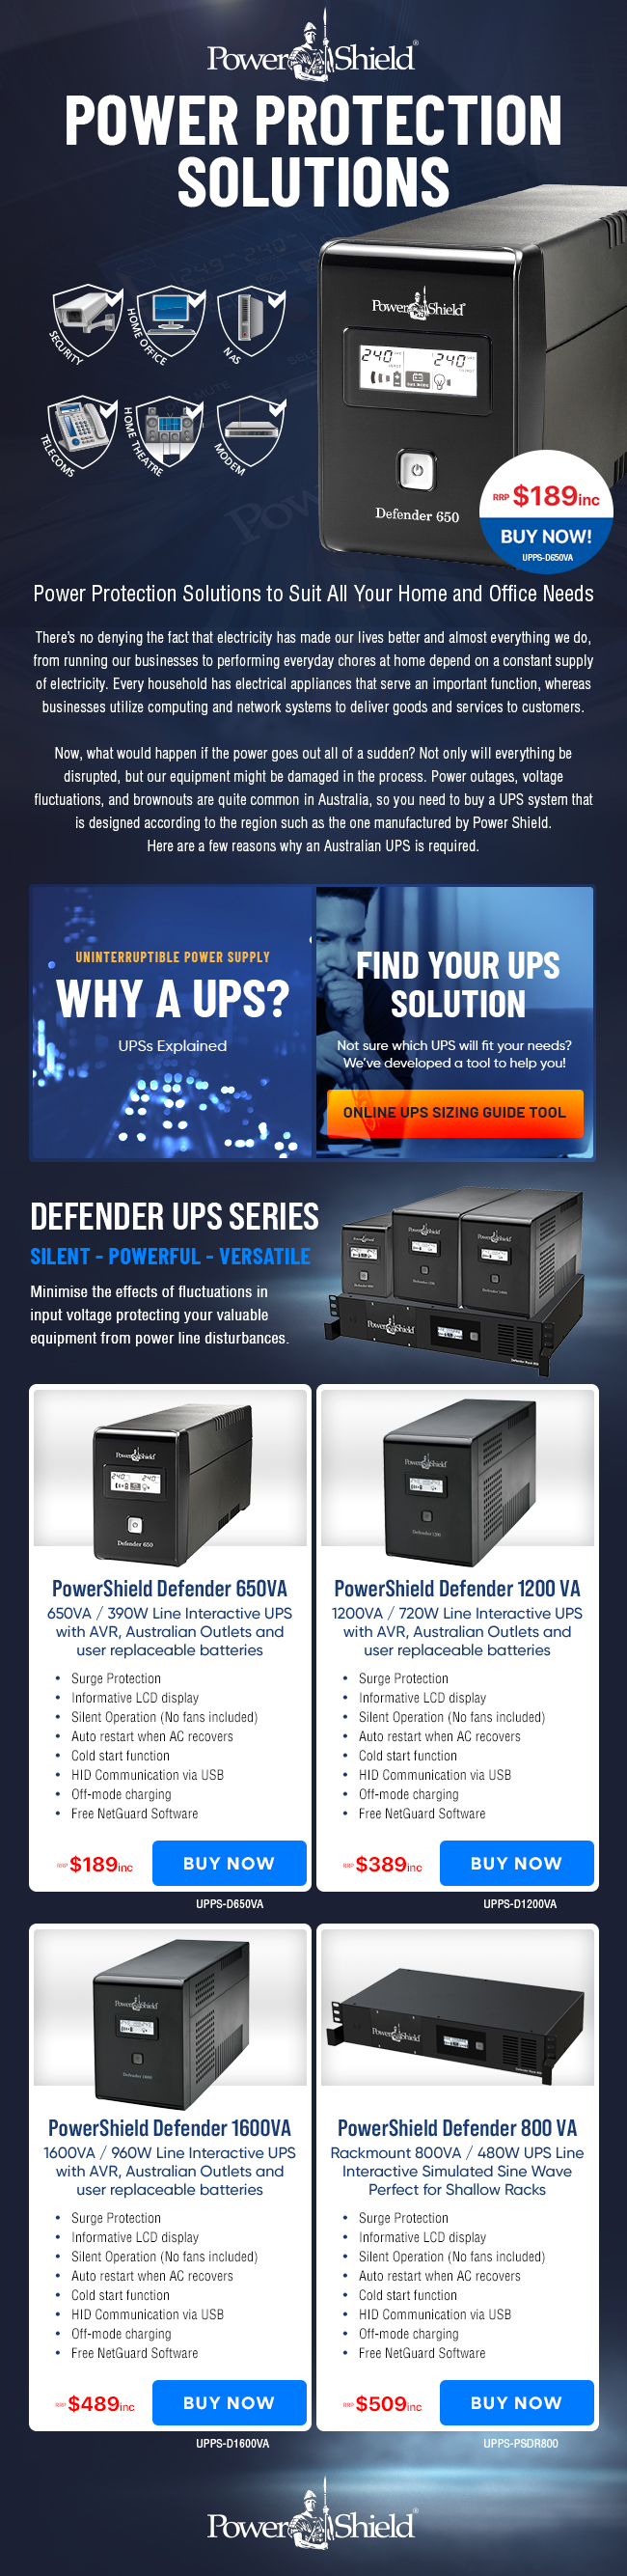 PowerShield Defender UPS Series